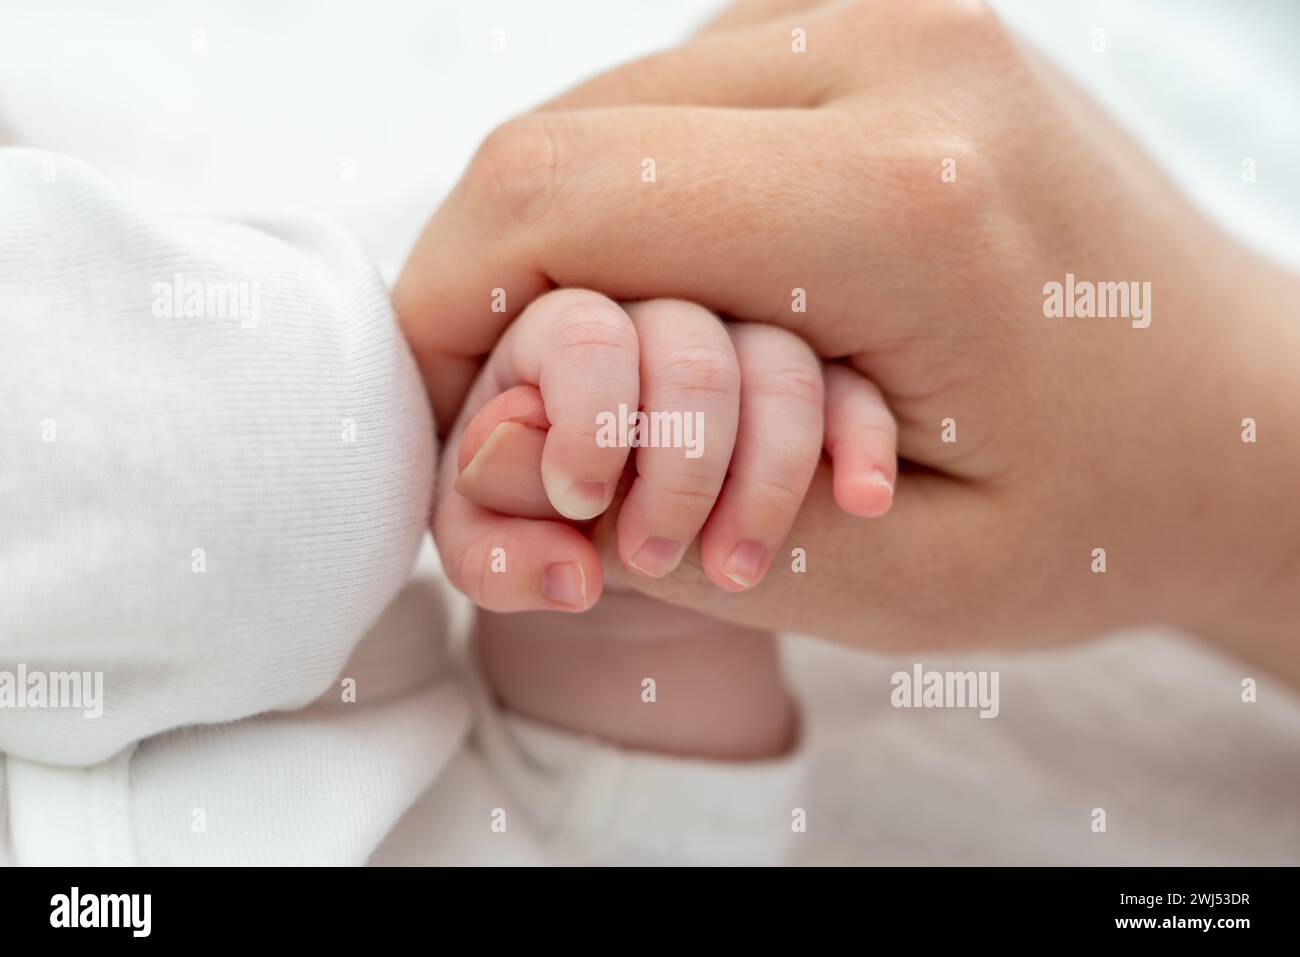 El delicado agarre del pulgar de la madre del recién nacido emana confianza. Concepto de conexión materna pura Foto de stock